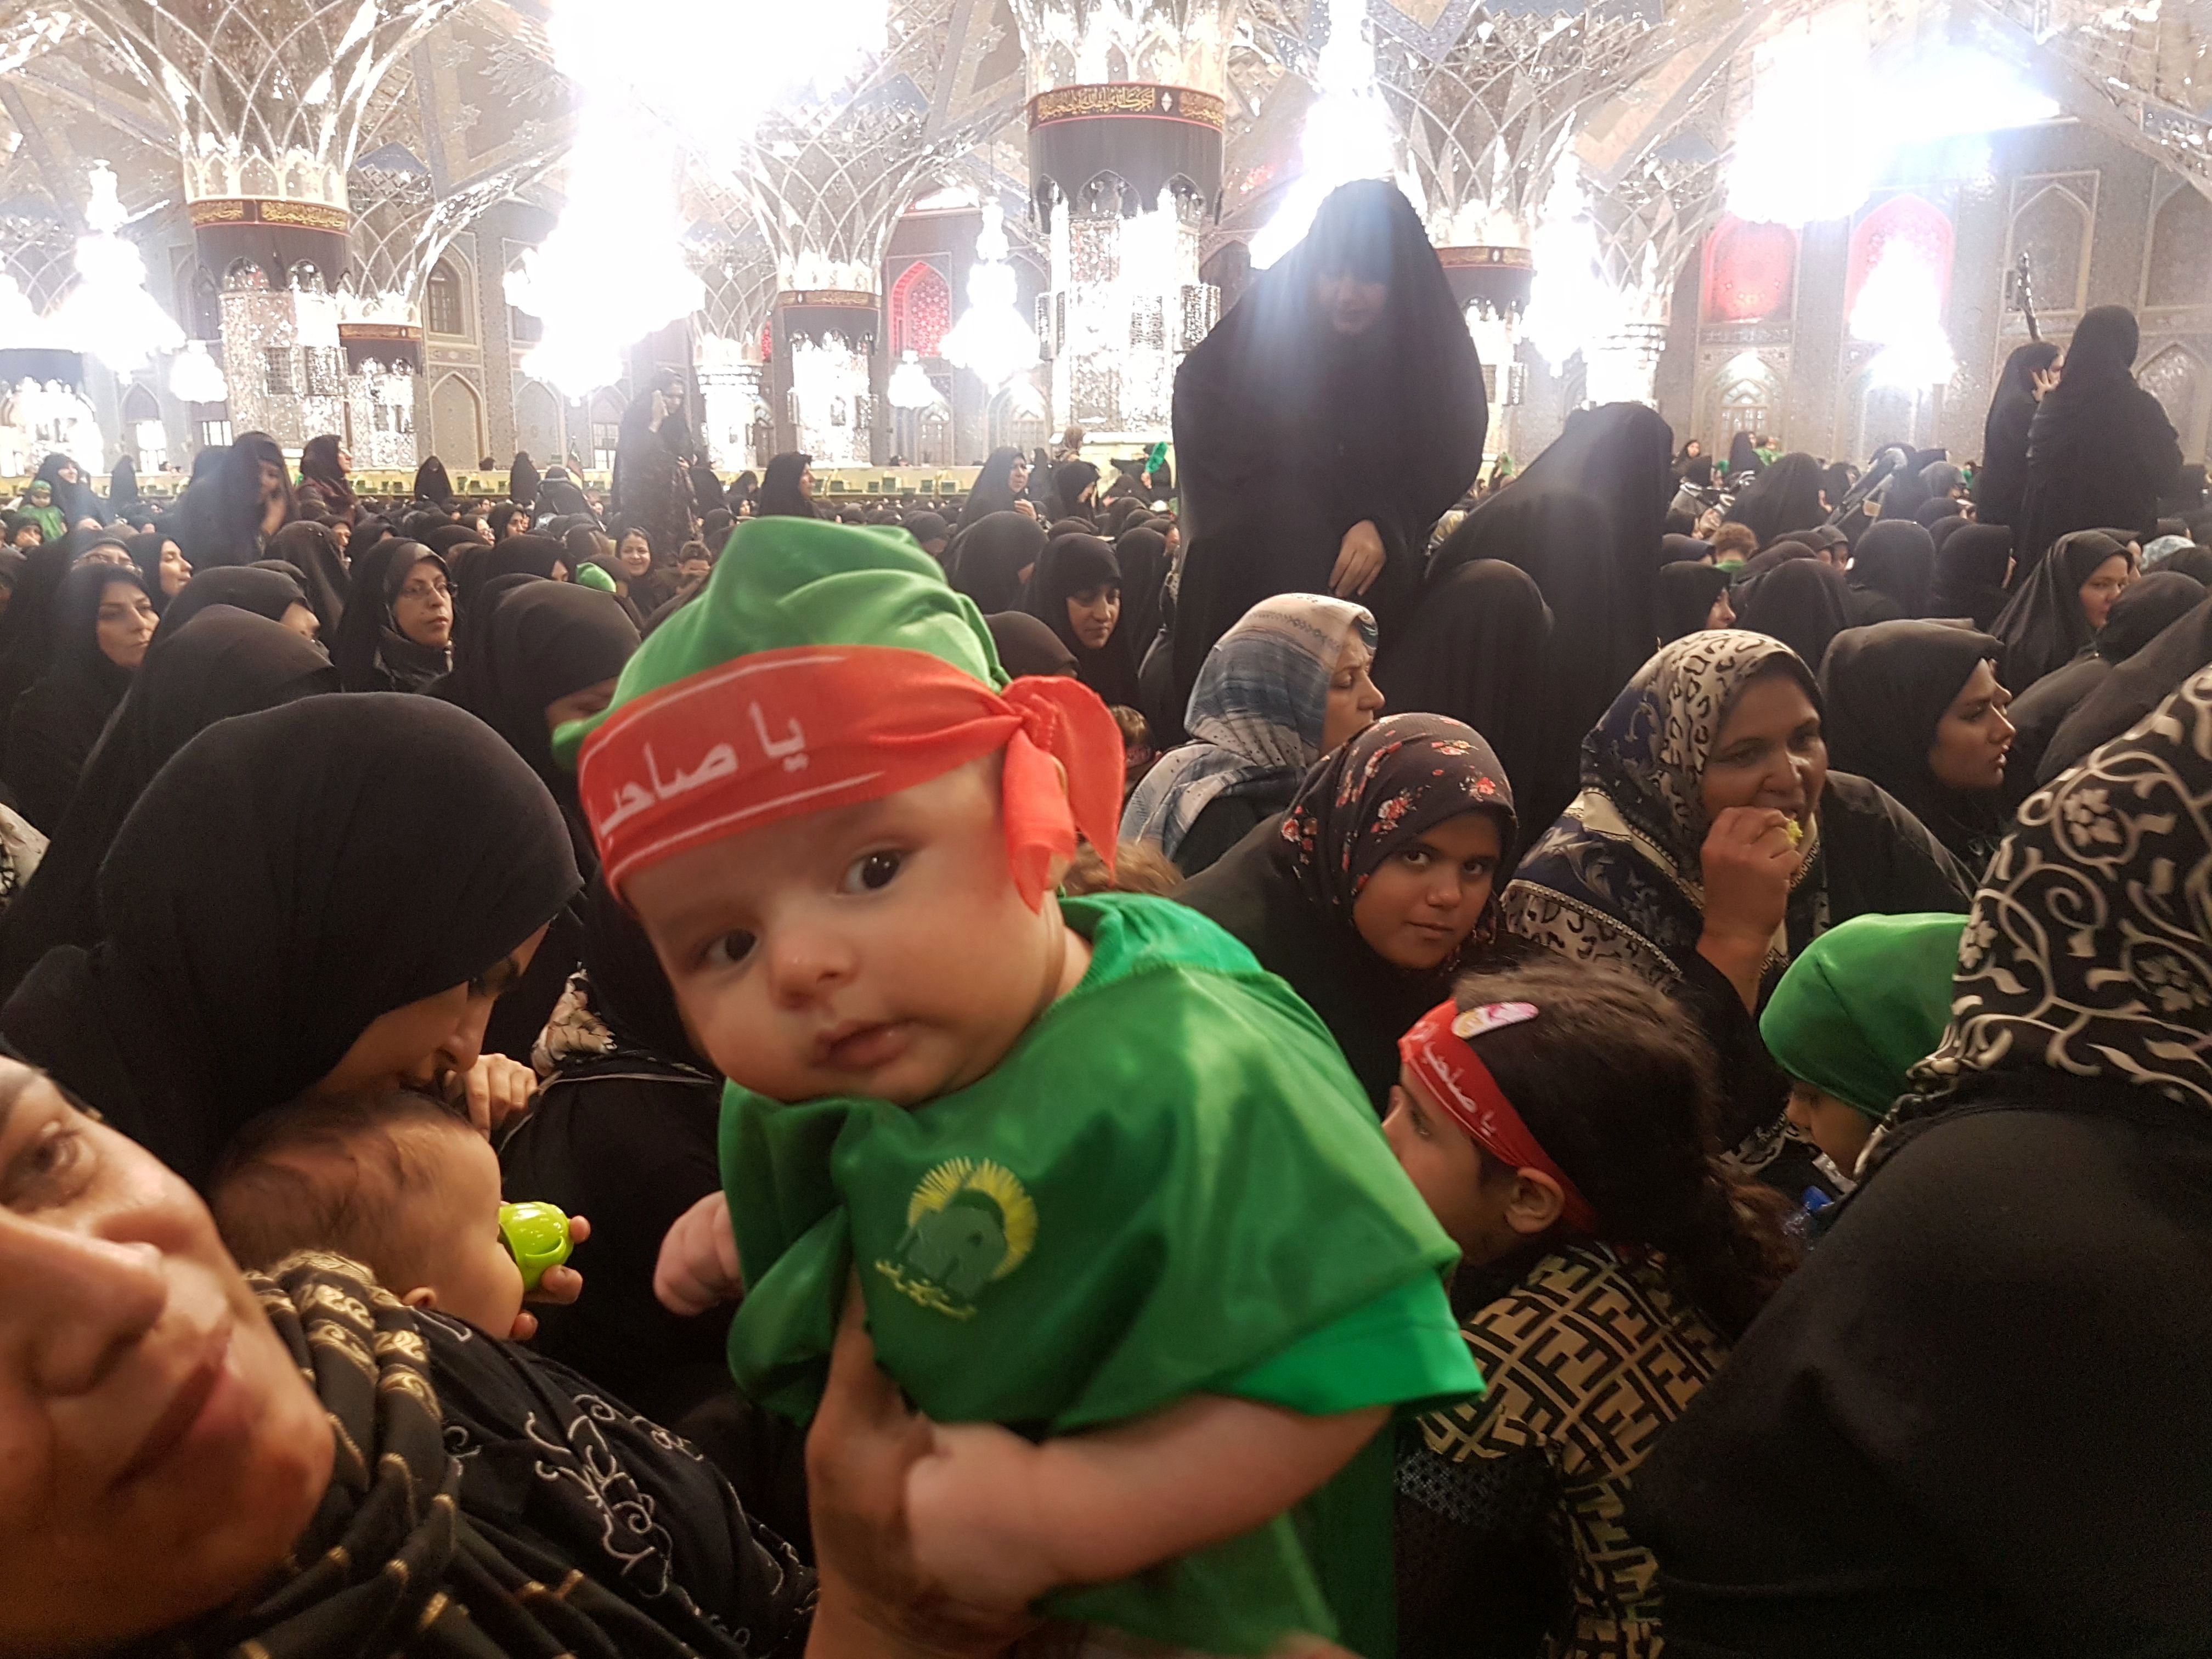 برگزاری بزرگترین اجتماع شیرخوارگان حسینی در حرم مطهر رضوی